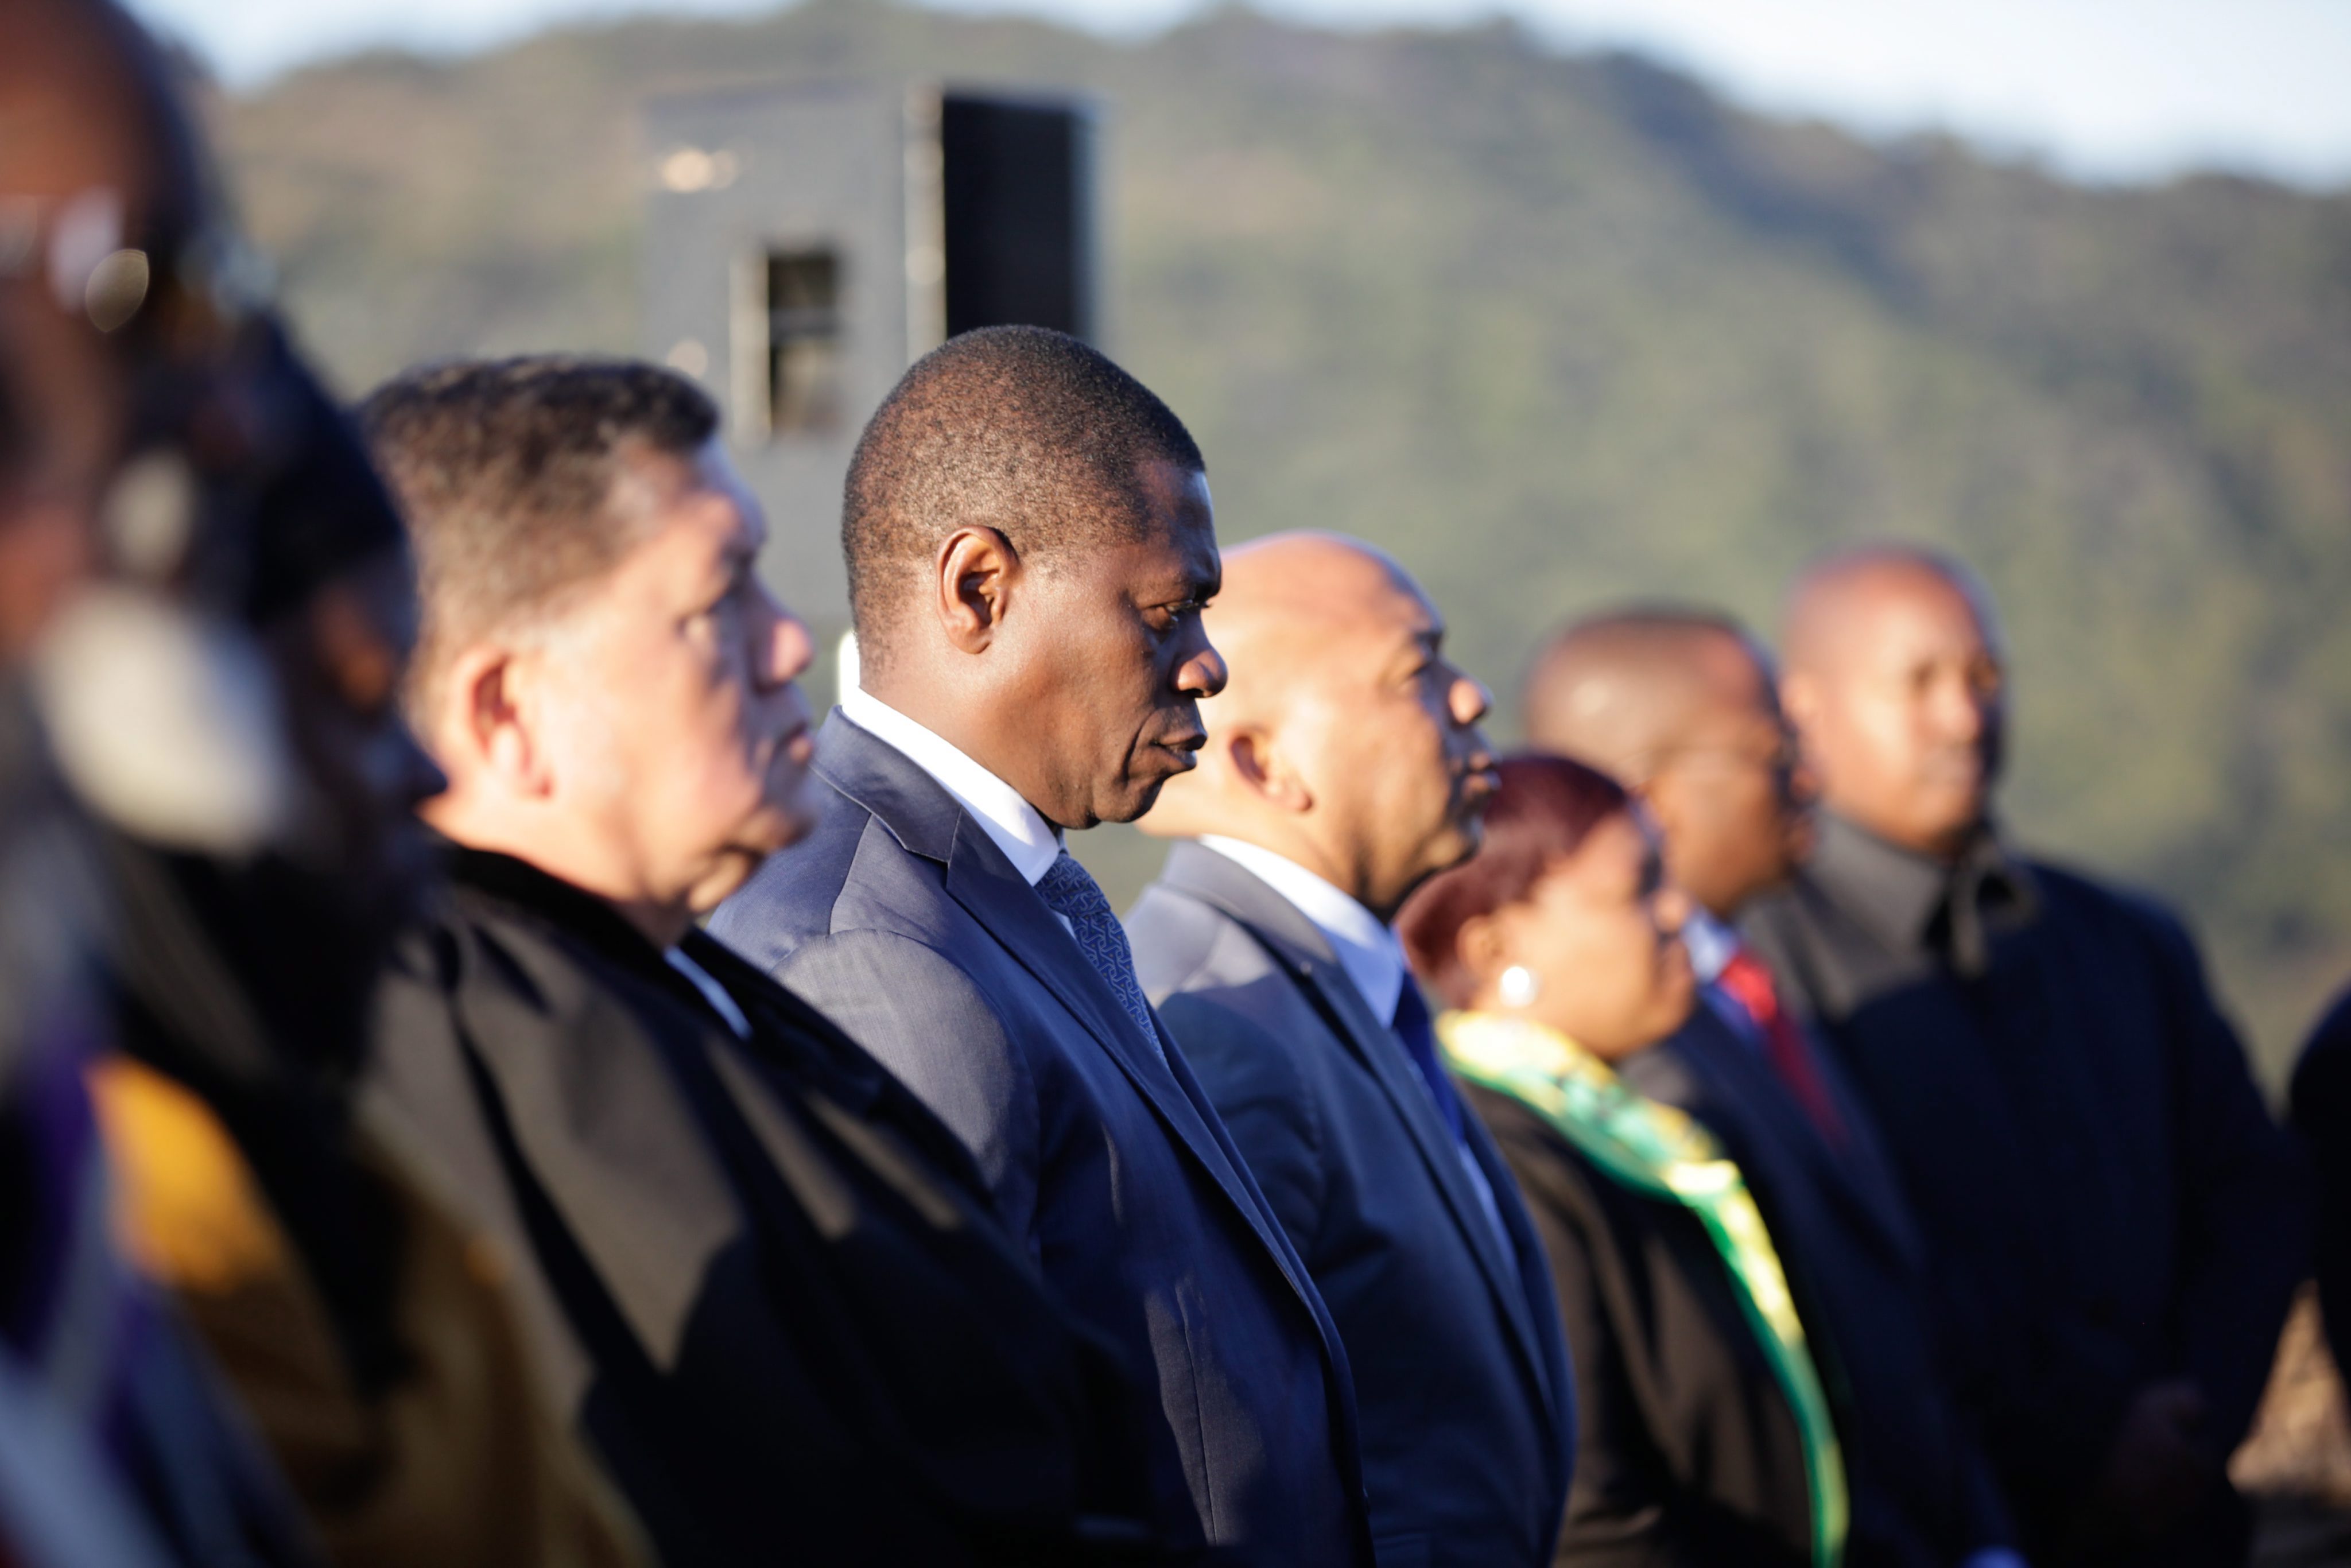 ANC apresentará quinta-feira moção de censura se Zuma não se demitir até lá